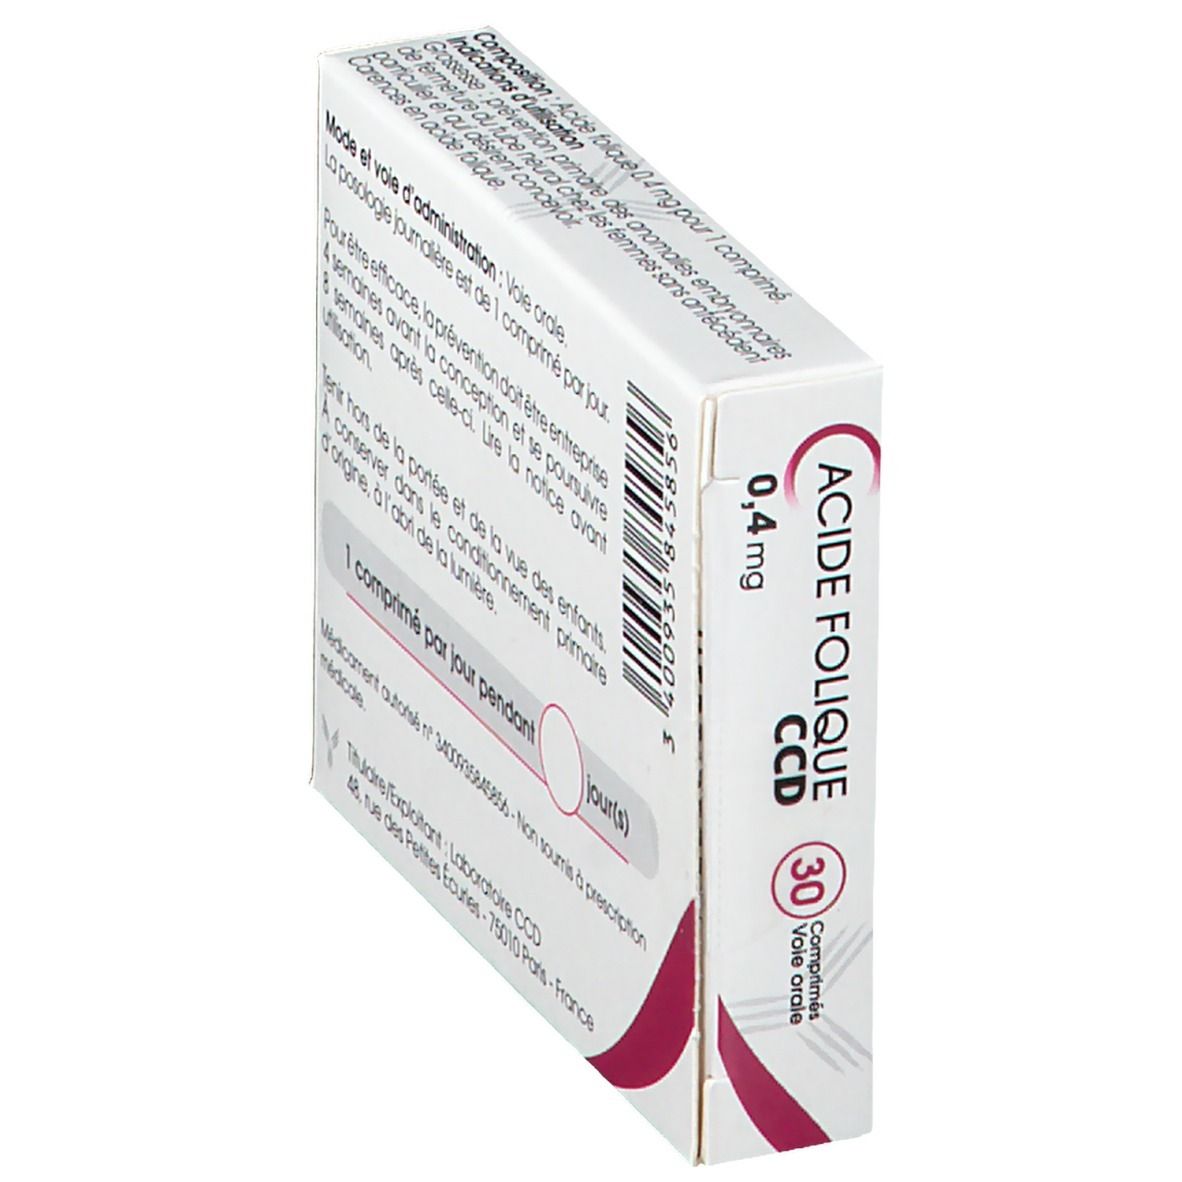 Laboratoire C.C.D. Acide Folique 0,4 mg